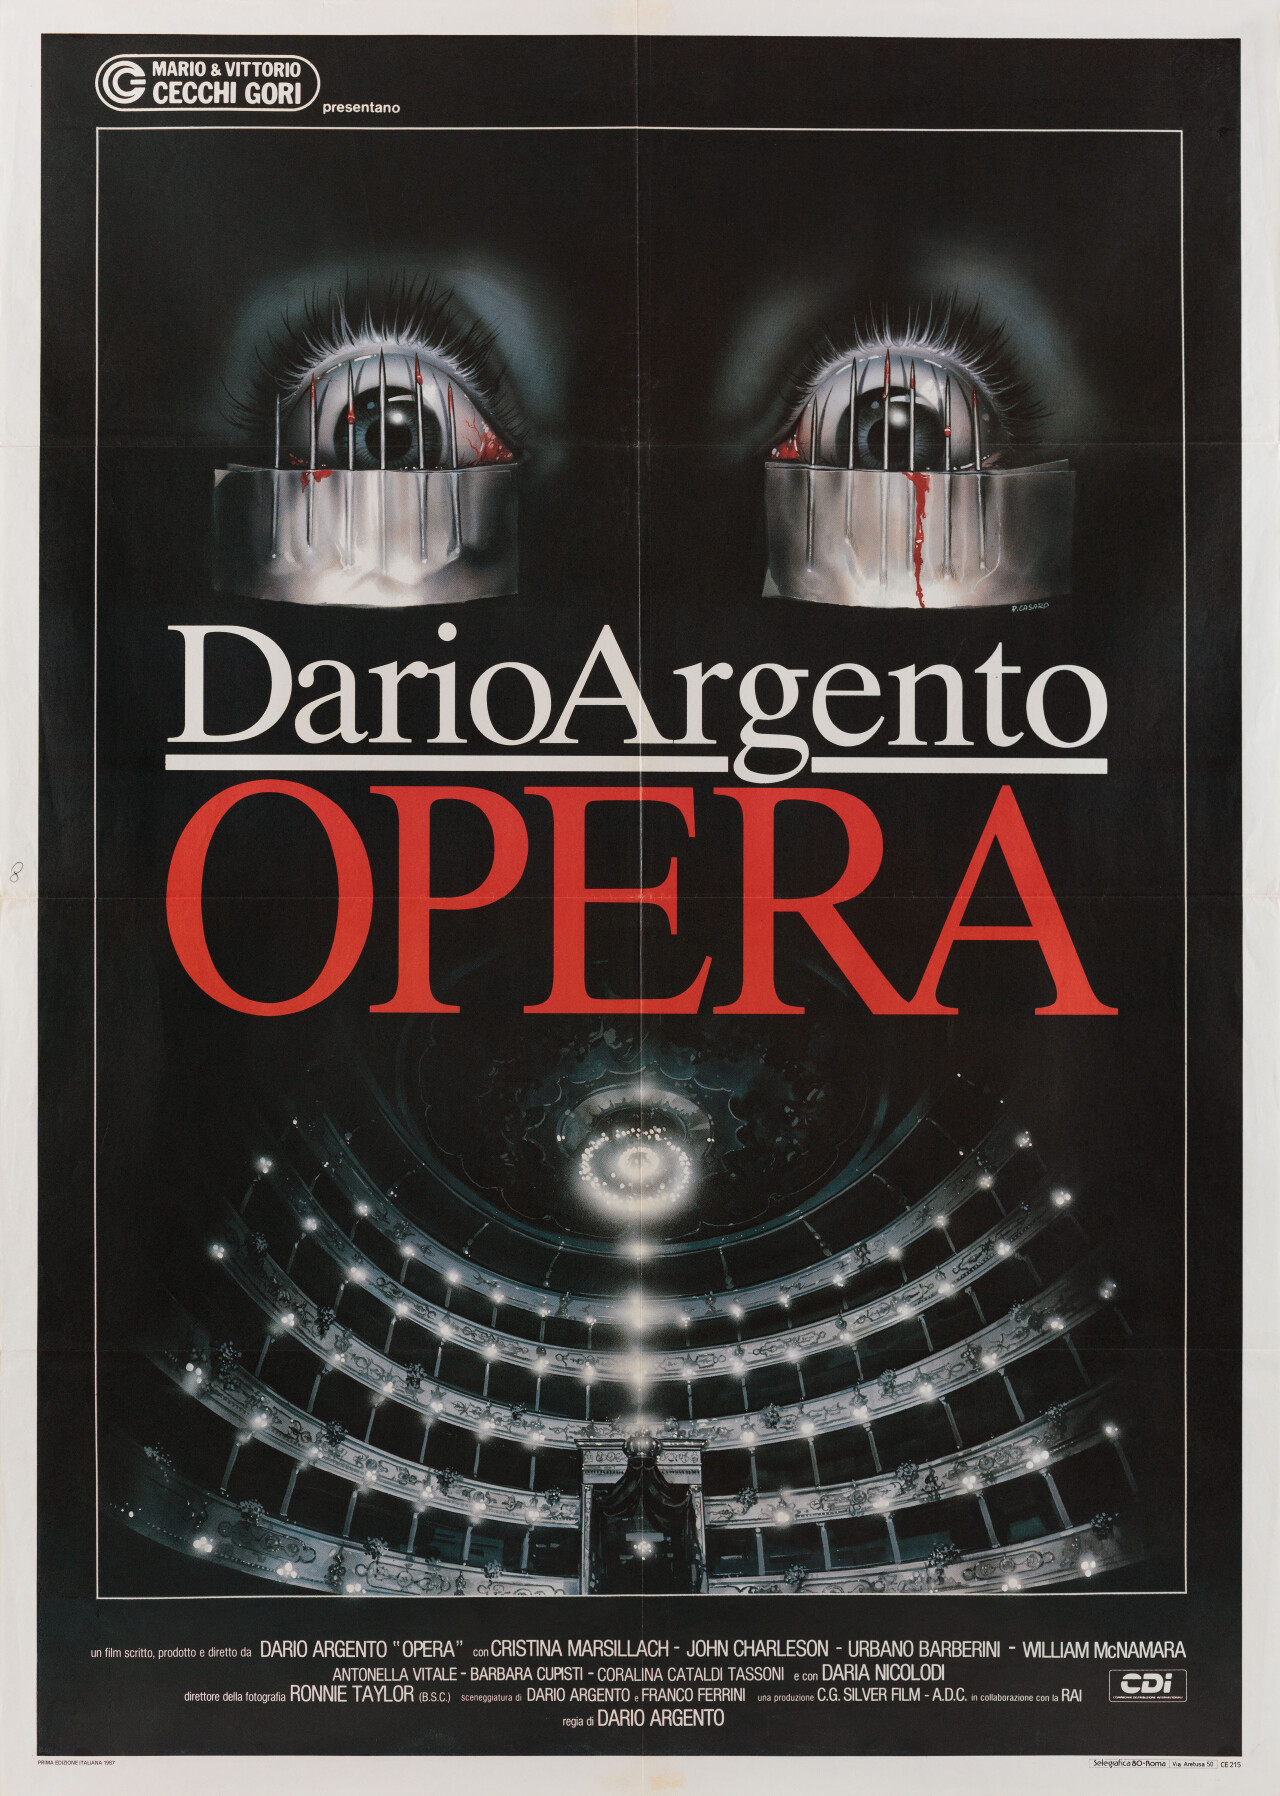 Ужас в опере (Opera, 1987), режиссёр Дарио Ардженто, итальянский постер к фильму, автор Ренато Касаро (ужасы, 1987 год)